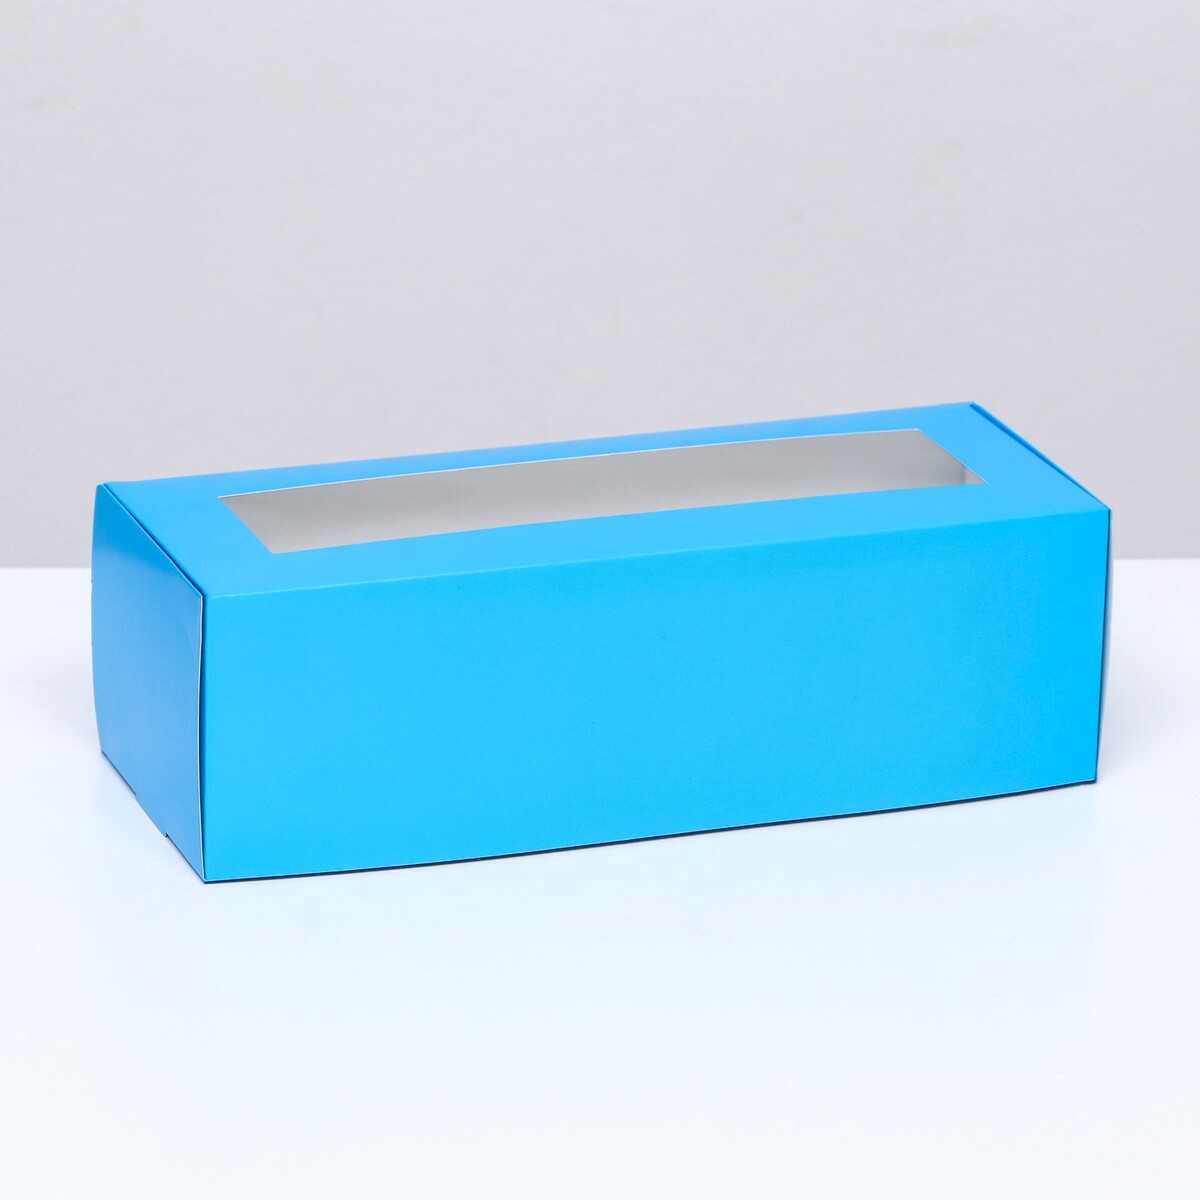 Коробка складная с окном под рулет, голубая, 26 х 10 х 8 см коробка под рулет белая 16 5 х 11 х 9 см